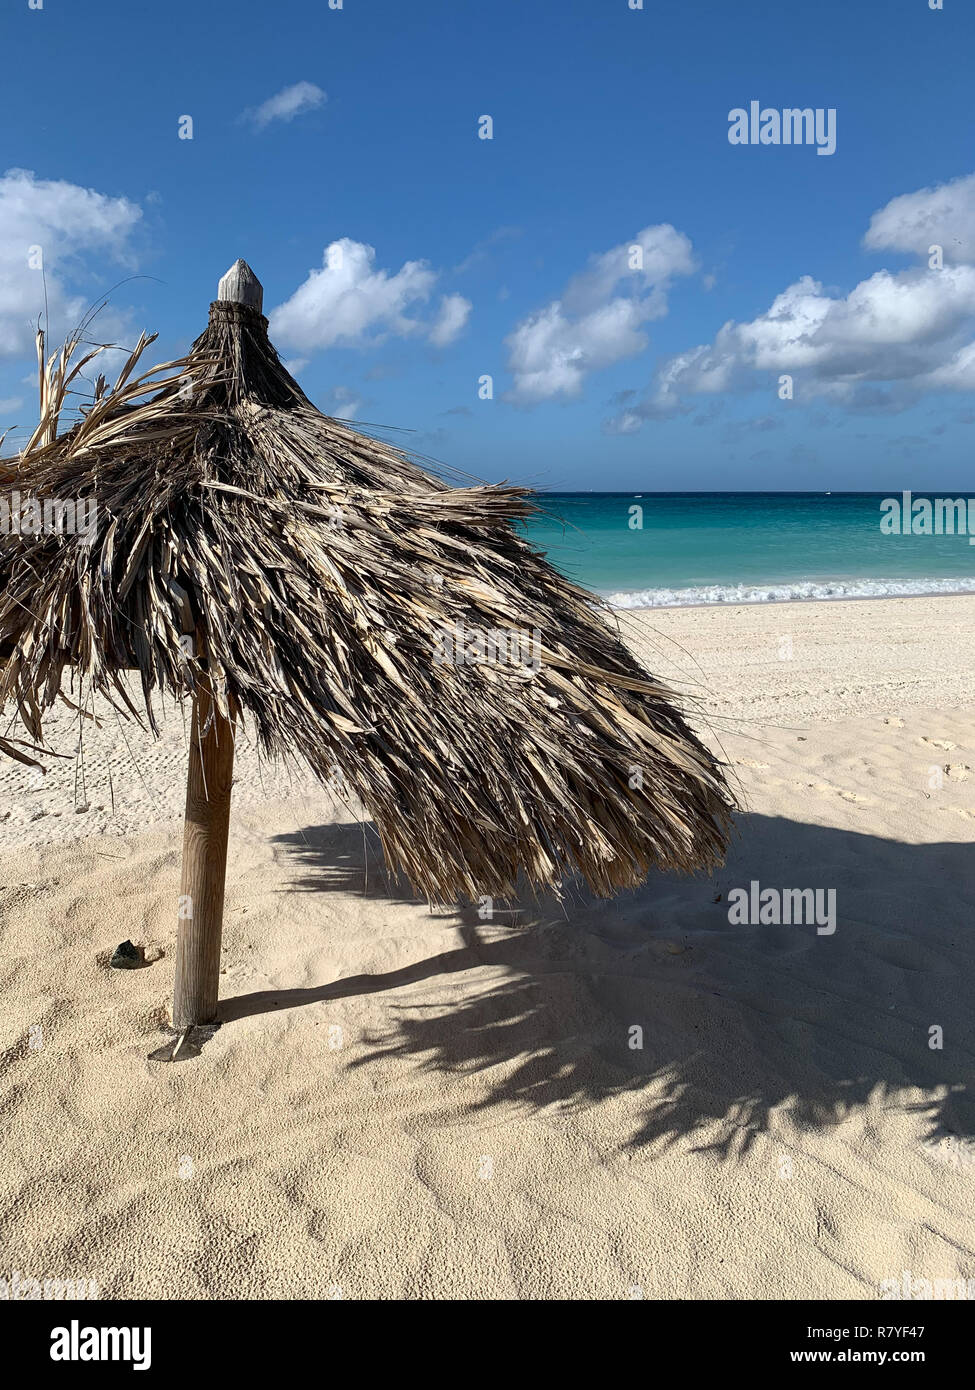 Aruba - tropical de playa de arena blanca con aguas aguamarinas - Divi Aruba Beach es un comienzo de vacaciones en el Caribe - Isla holandesa / Islas de Sotavento Foto de stock